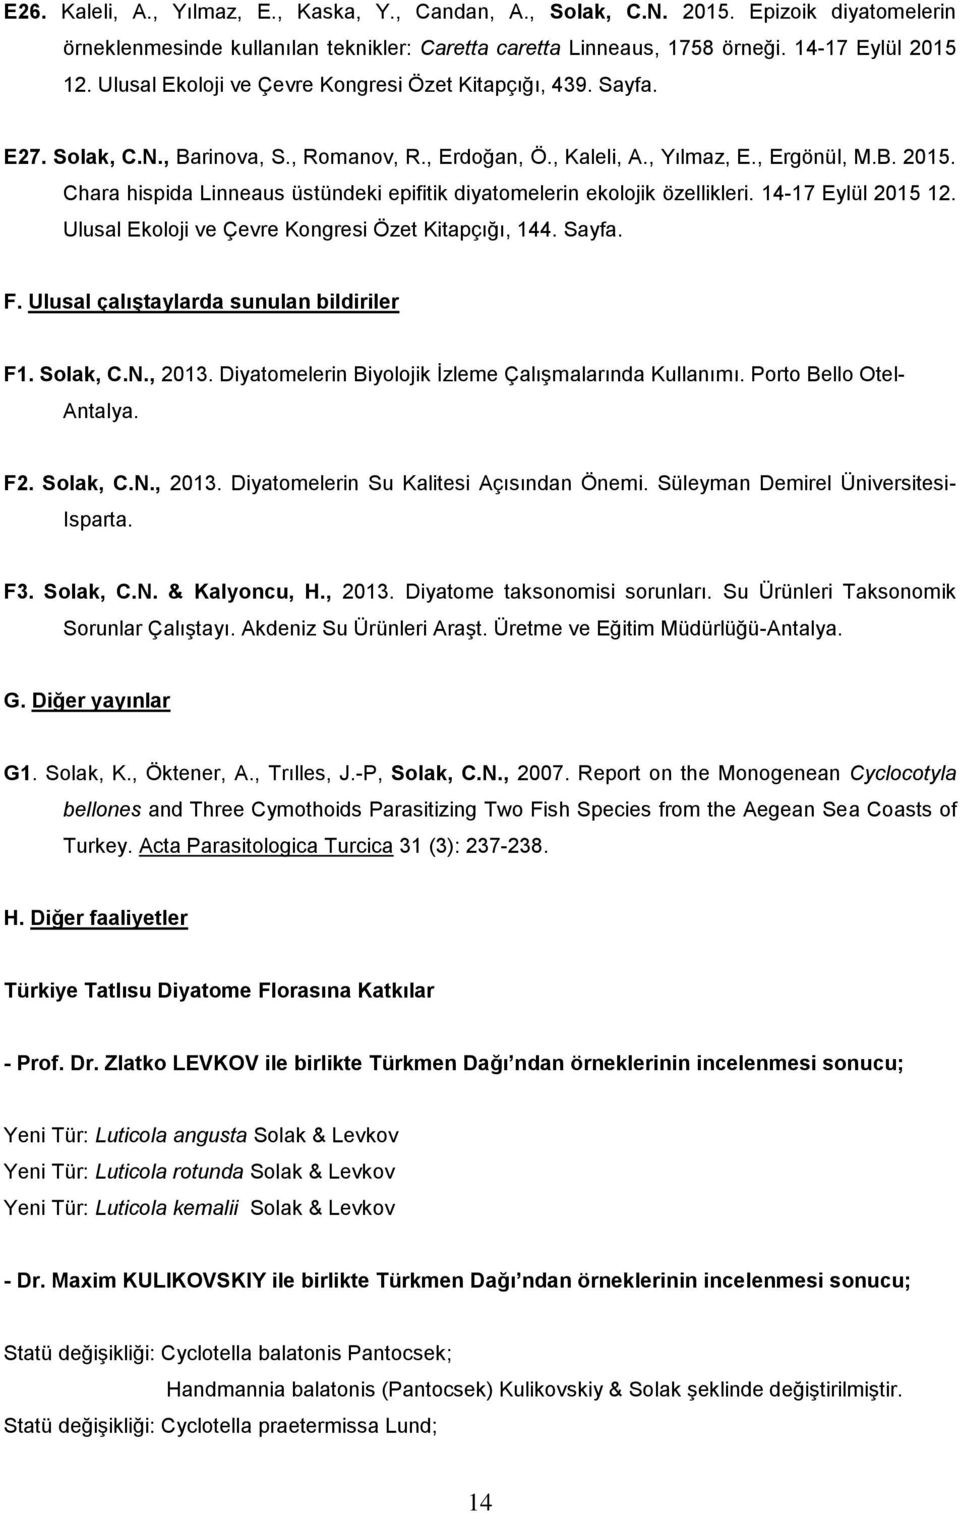 Chara hispida Linneaus üstündeki epifitik diyatomelerin ekolojik özellikleri. 14-17 Eylül 2015 12. Ulusal Ekoloji ve Çevre Kongresi Özet Kitapçığı, 144. Sayfa. F.